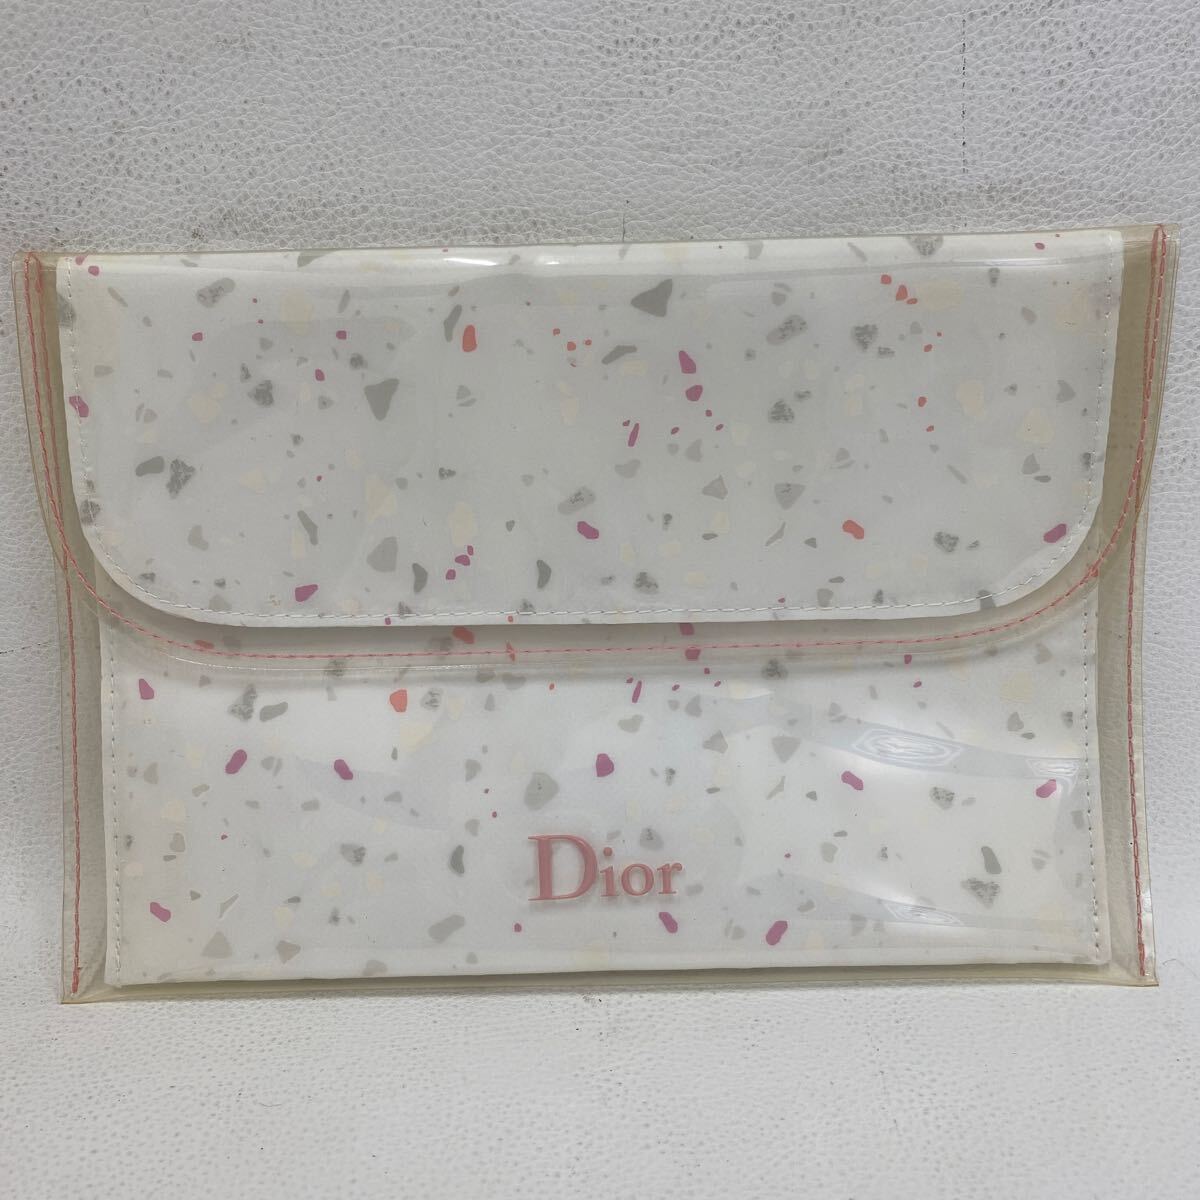 □9132【卸売】Christian Dior クリスチャンディオール ポーチ キーホルダー チャーム シュシュ ミニオードゥトワレ付き レディースの画像7